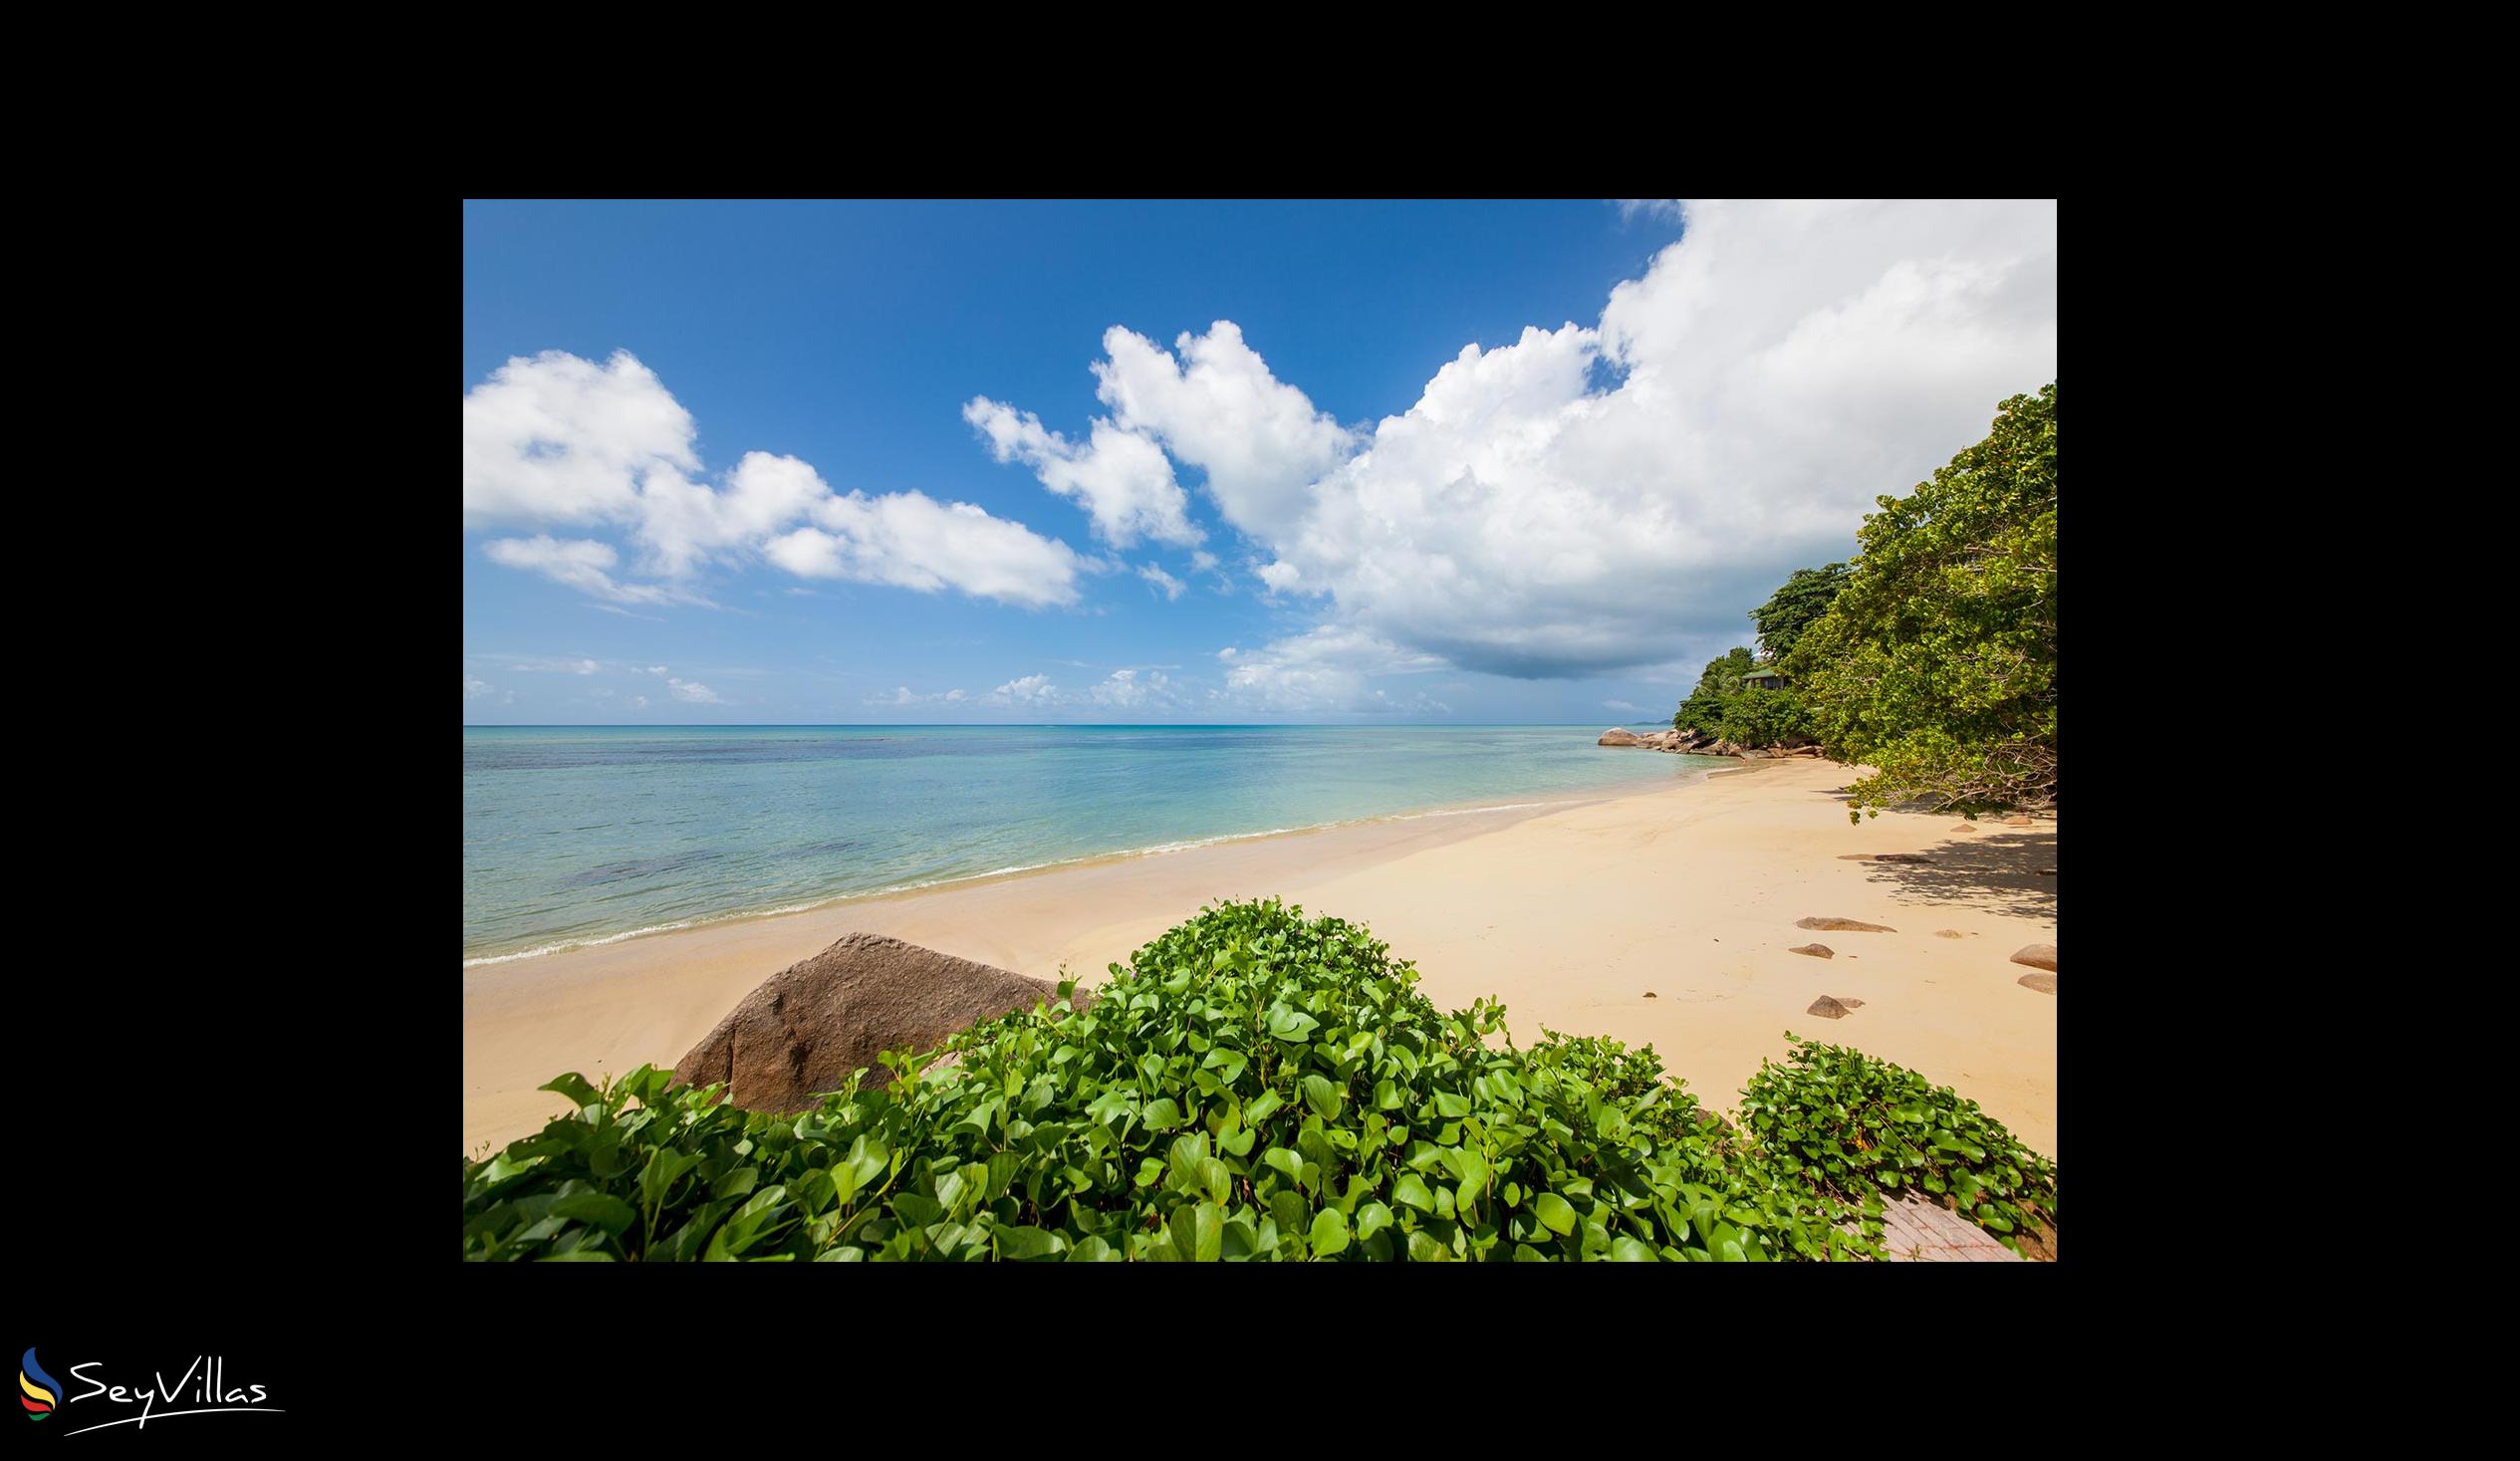 Foto 43: Coco de Mer & Black Parrot Suites - Plages - Praslin (Seychelles)